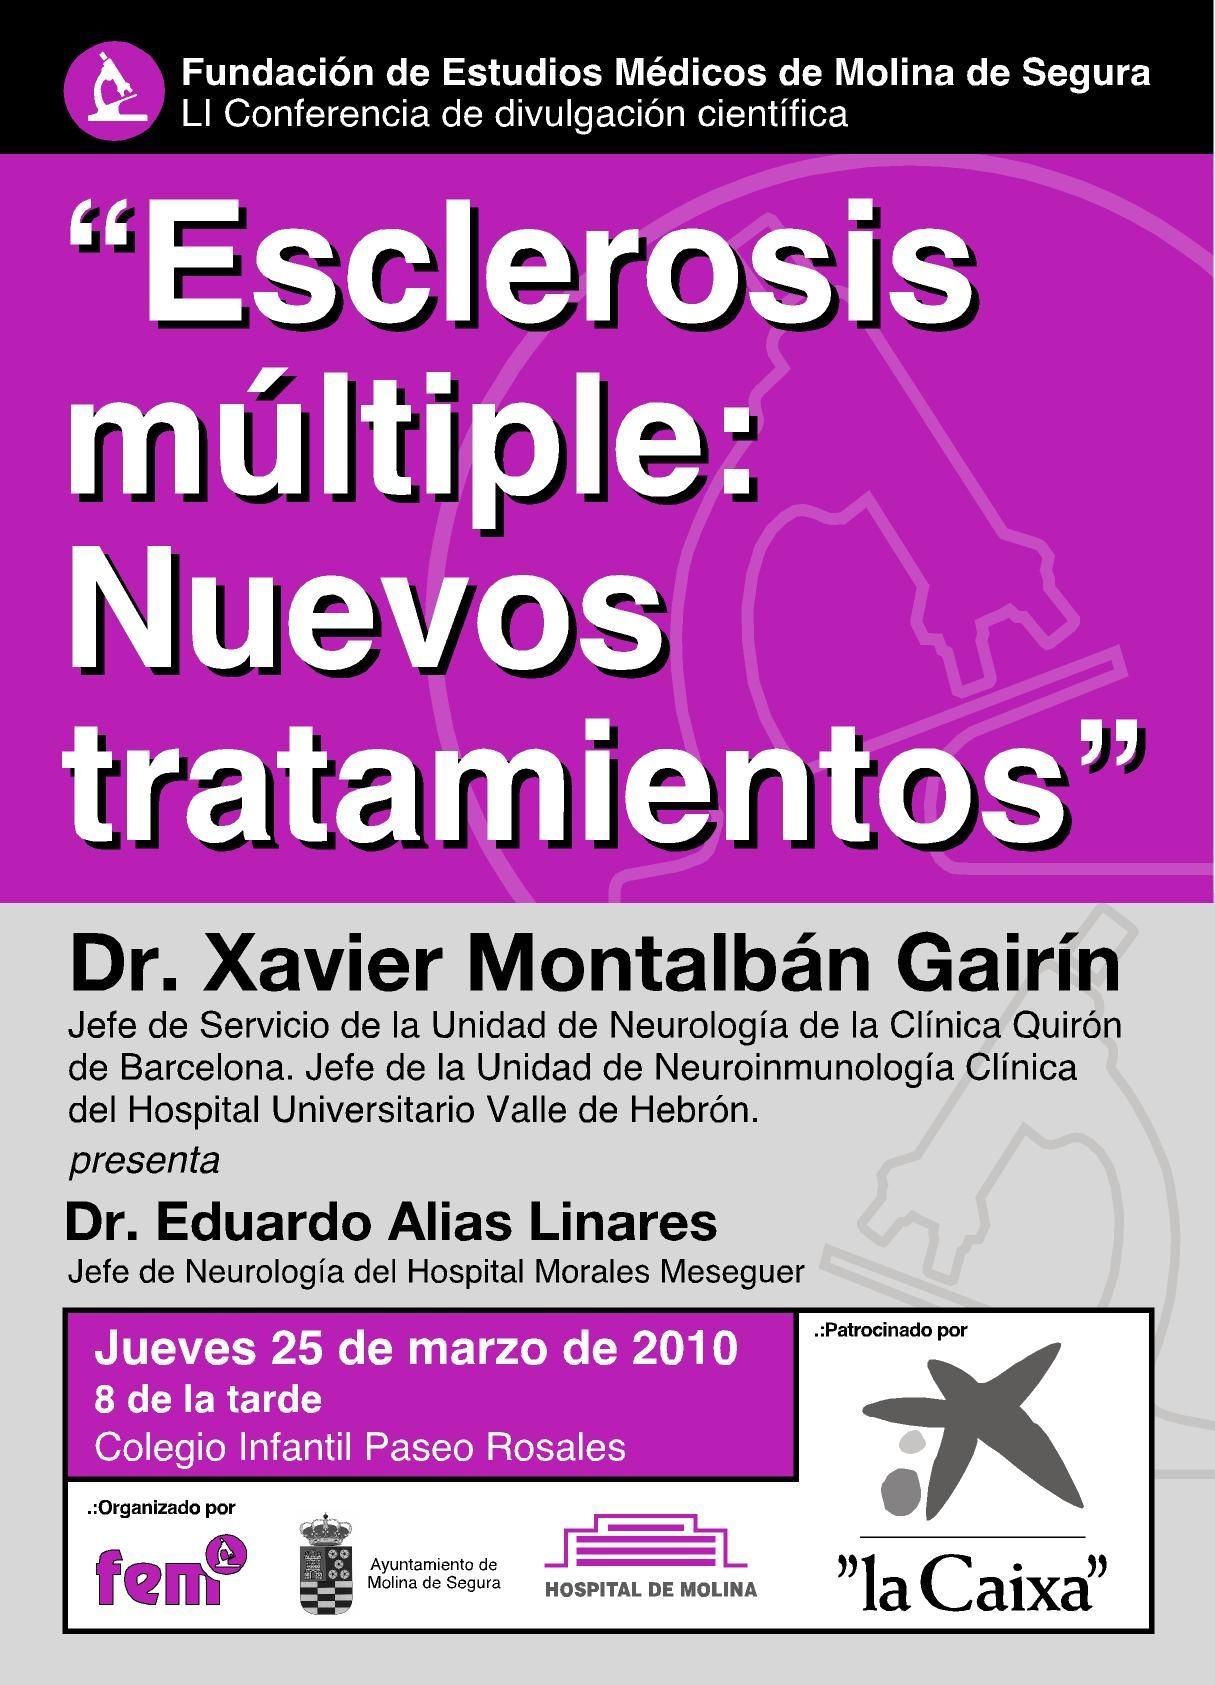 Conferencia sobre nuevos tratamientos en Esclerosis Múltiple en Molina de Segura.